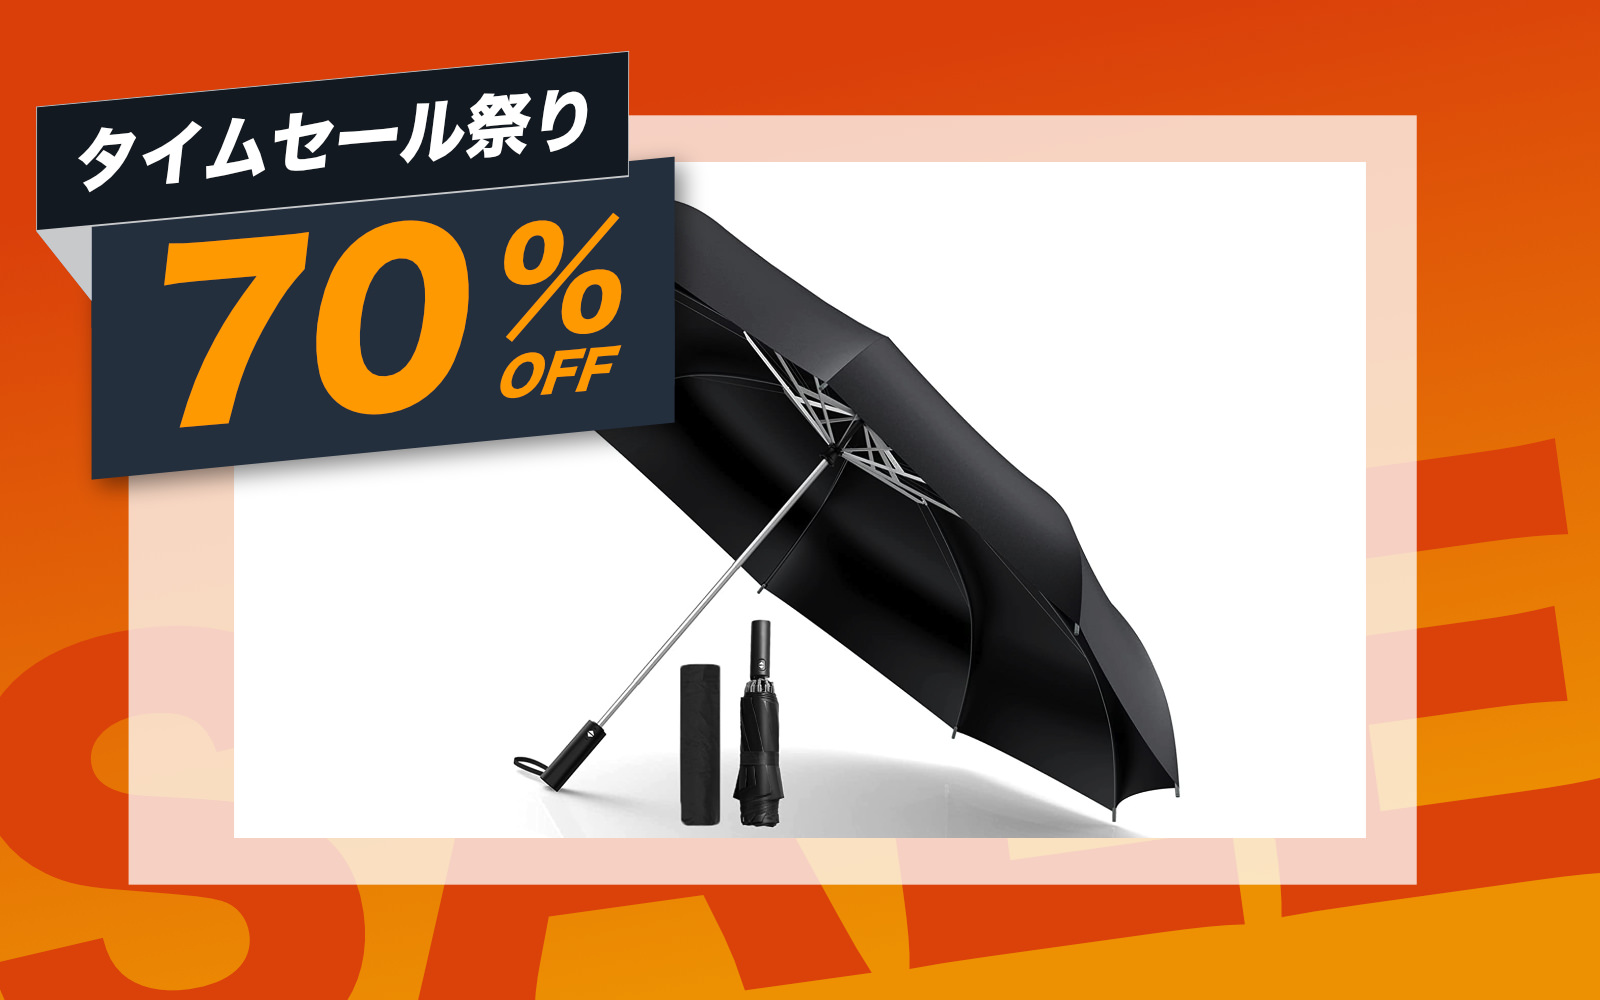 Sun Umbrella on sale